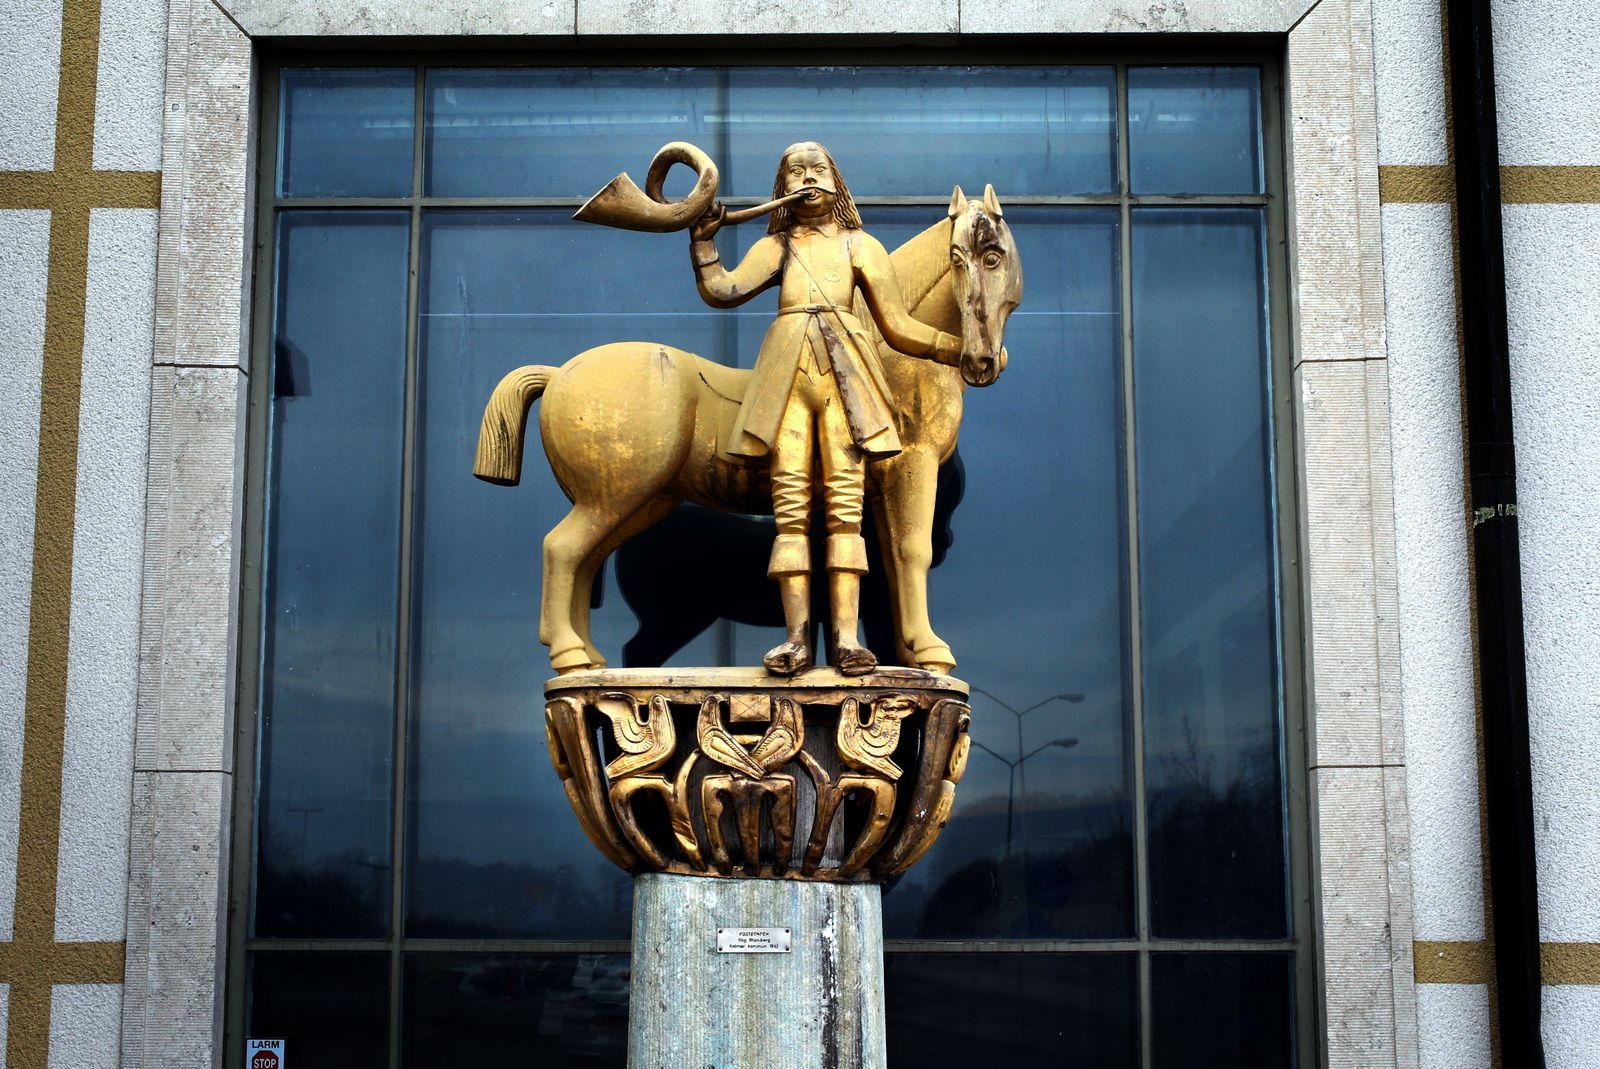 Statyn vid entrén mot Sveaplan föreställer en postbonde med horn. Frågan är om den får vara kvar.